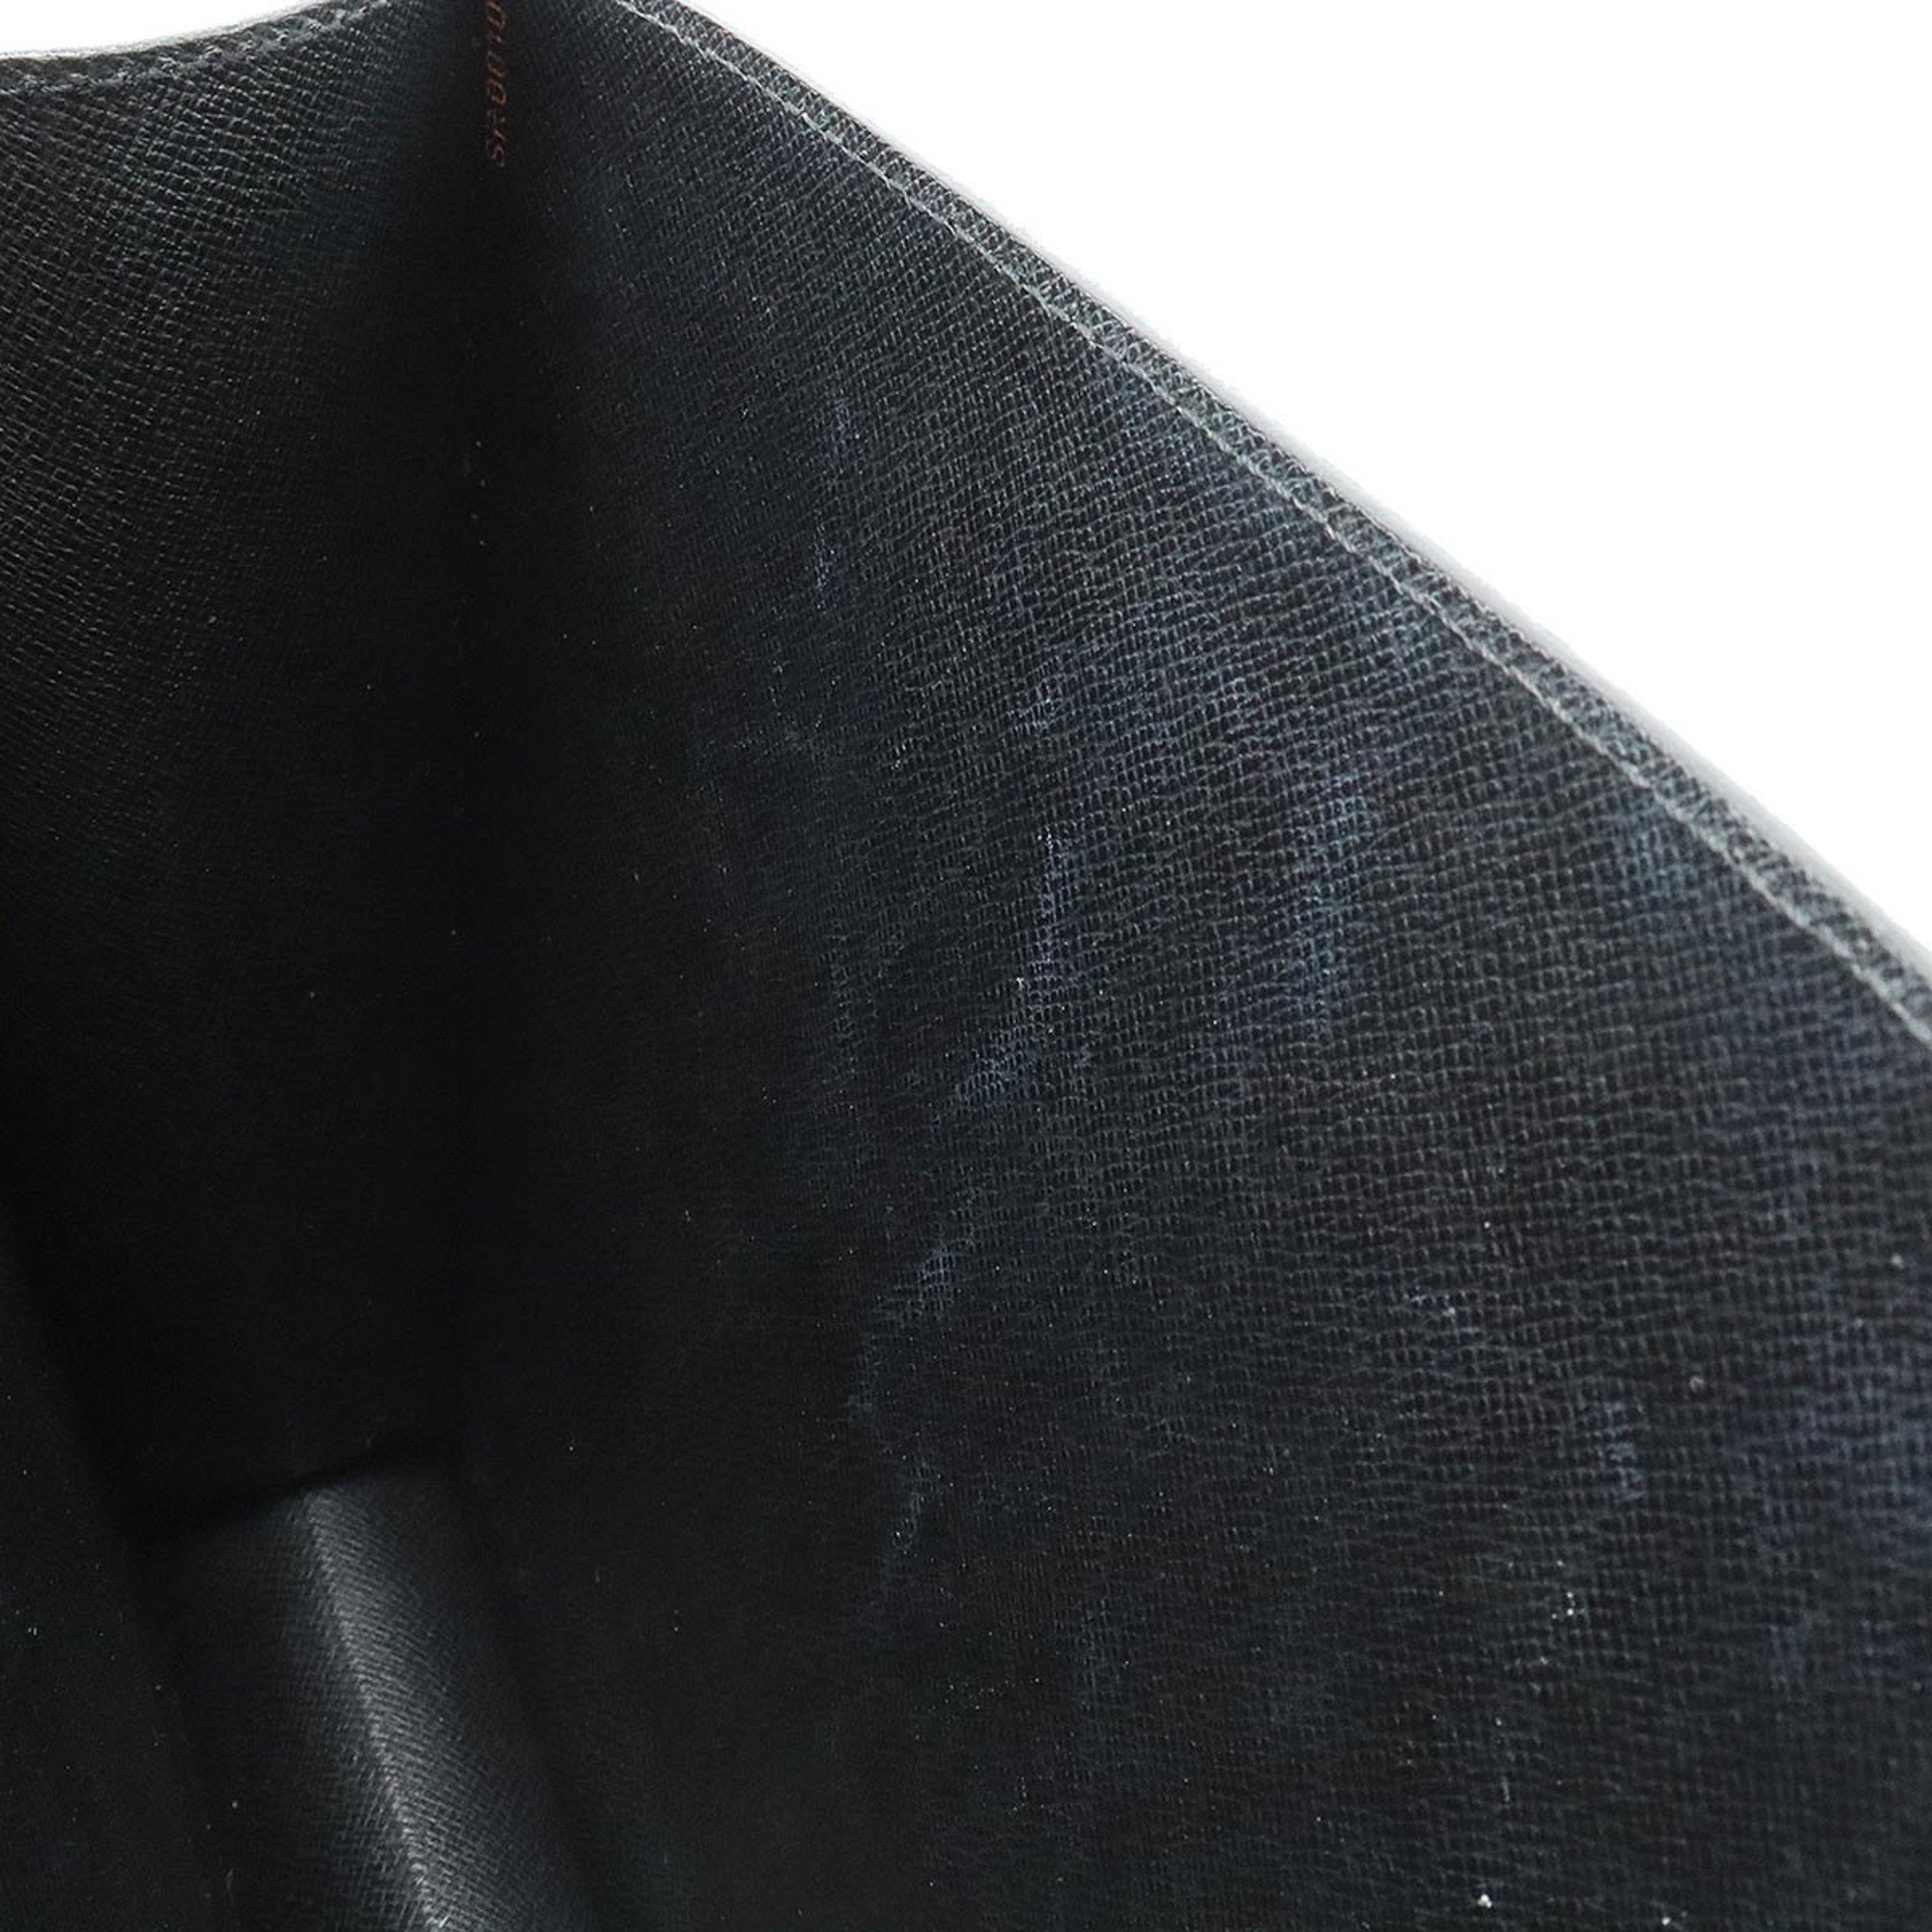 LOUIS VUITTON Louis Vuitton Epi Monceau Second Bag Handbag Noir Black Shoulder Missing Item M52122